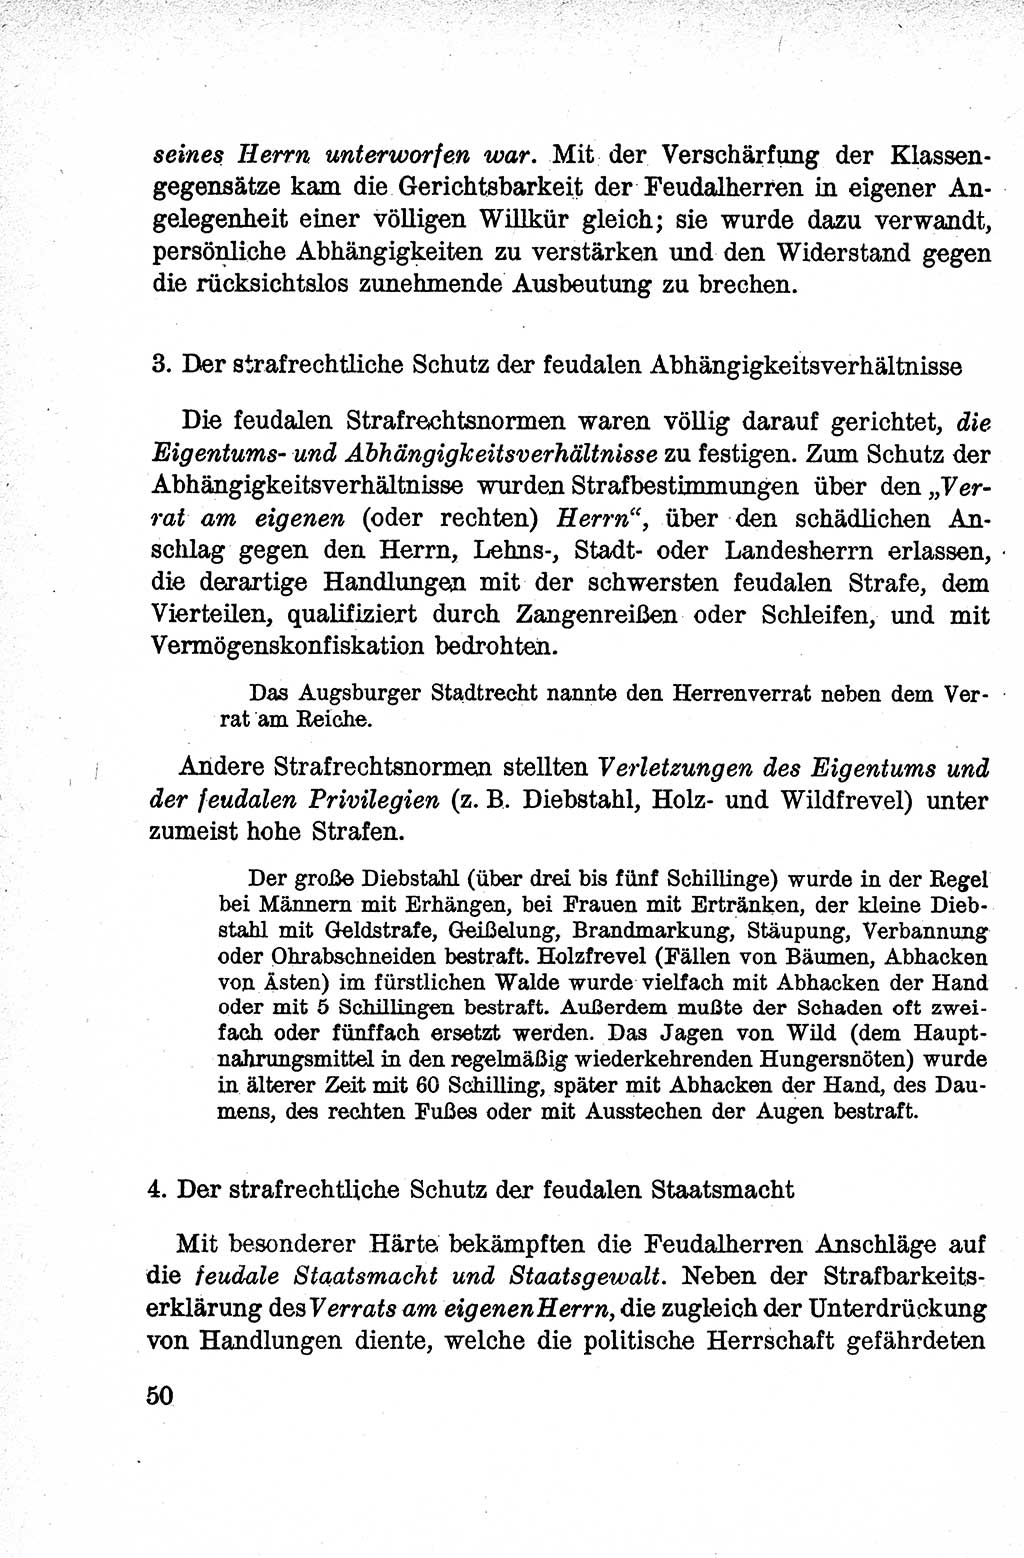 Lehrbuch des Strafrechts der Deutschen Demokratischen Republik (DDR), Allgemeiner Teil 1959, Seite 50 (Lb. Strafr. DDR AT 1959, S. 50)